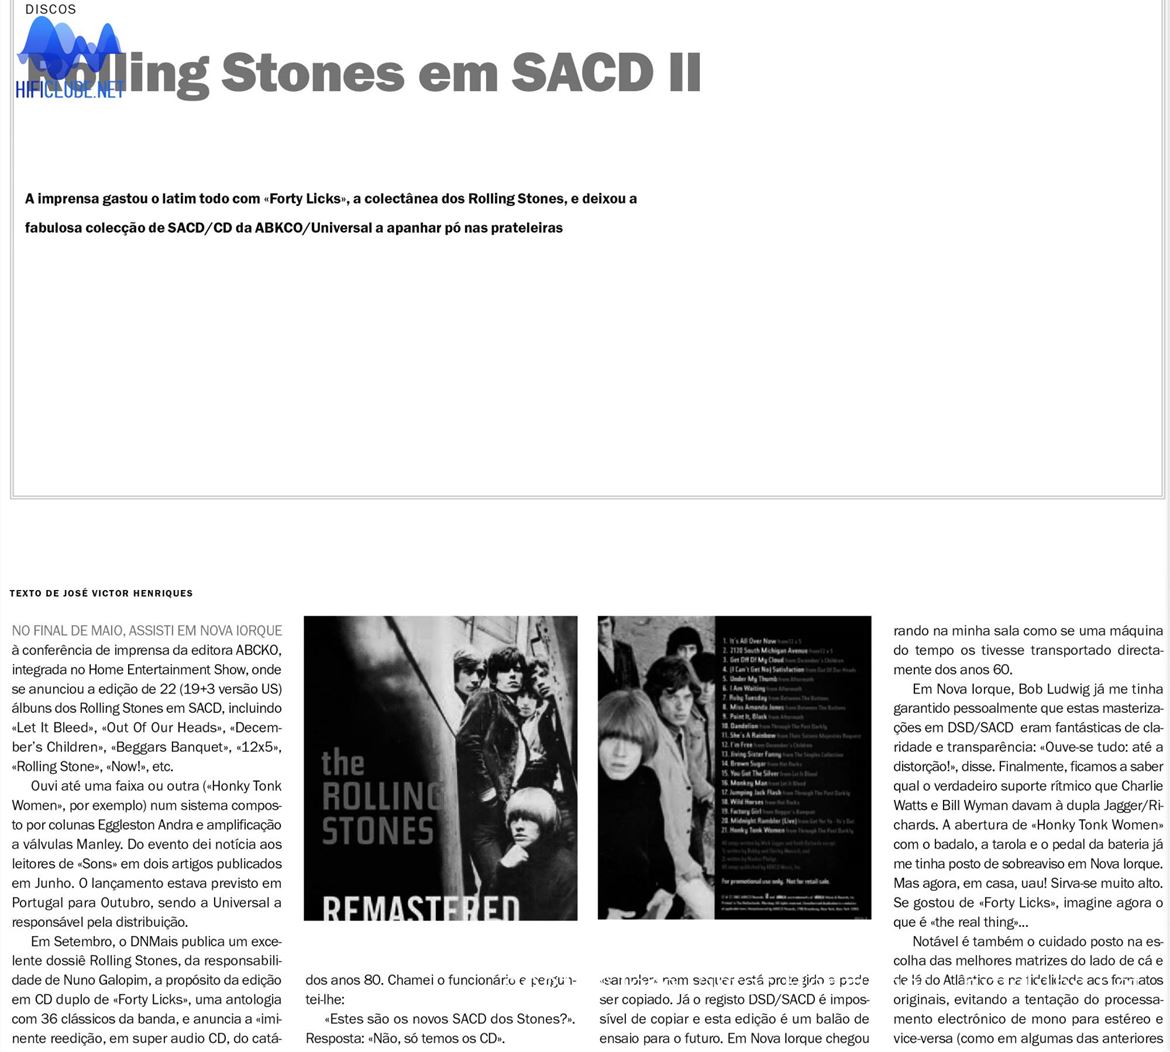 Nota: sobre esta edição em SACD, remasterizada por Bob Ludwig, escrevi um artigo no DN em 2002, sob o título: ‘Rolling Stones em SACD II’, que podem ler na integra em formato pdf, no final em baixo.